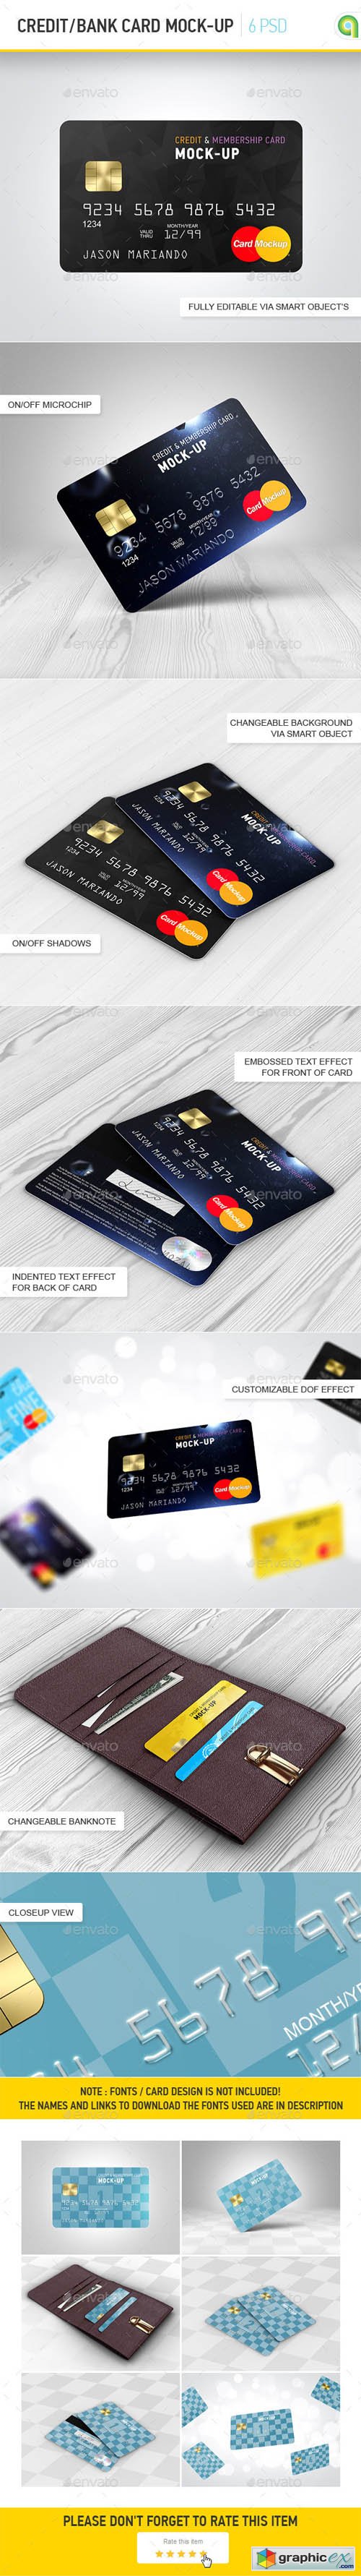 Credit / Bank Card Mock-Up